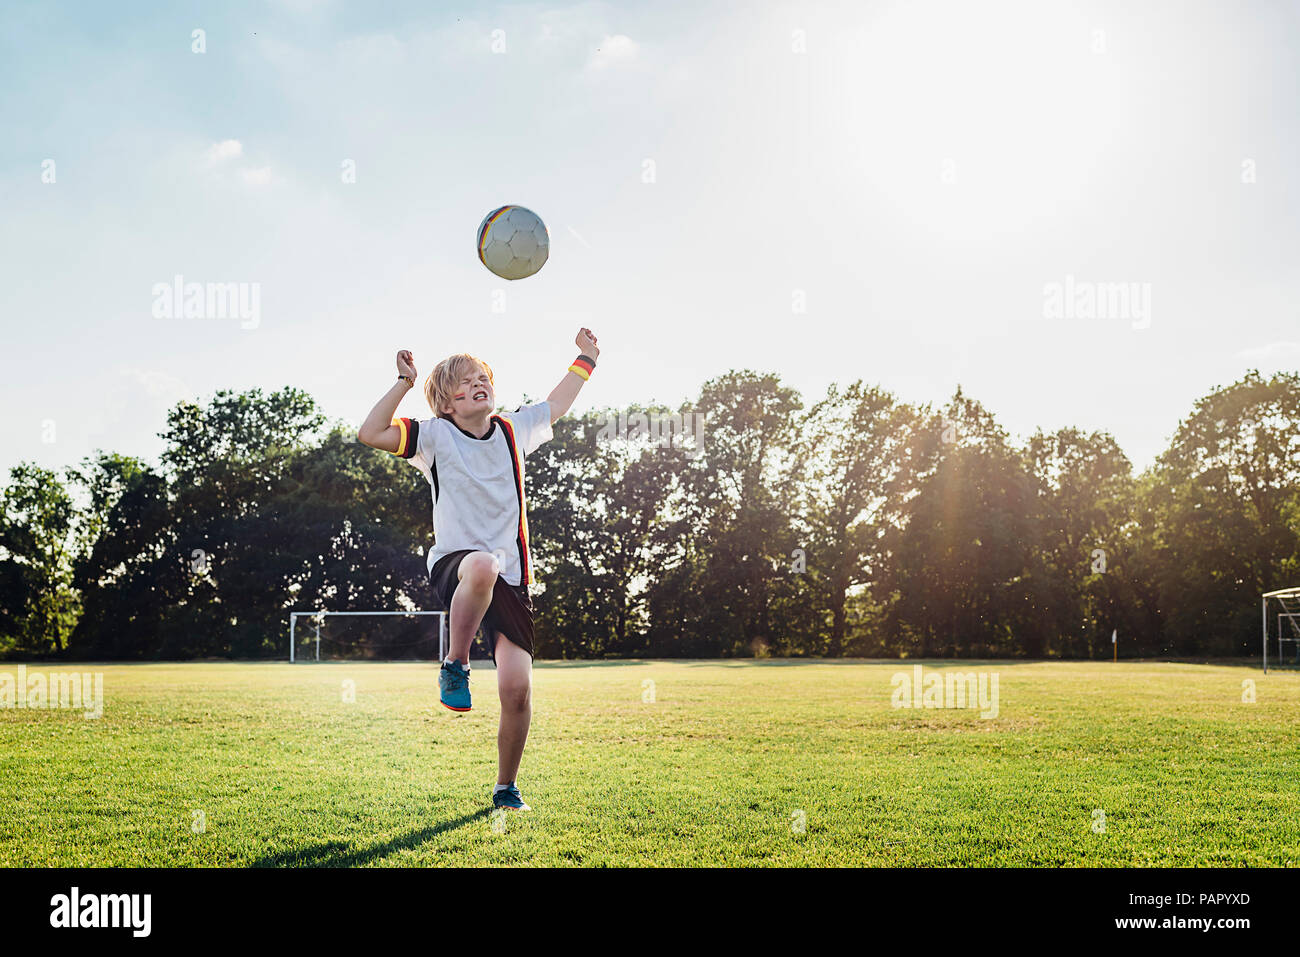 Junge tragen Deutsche Fußball-shirt Fußball spielen Stockfoto